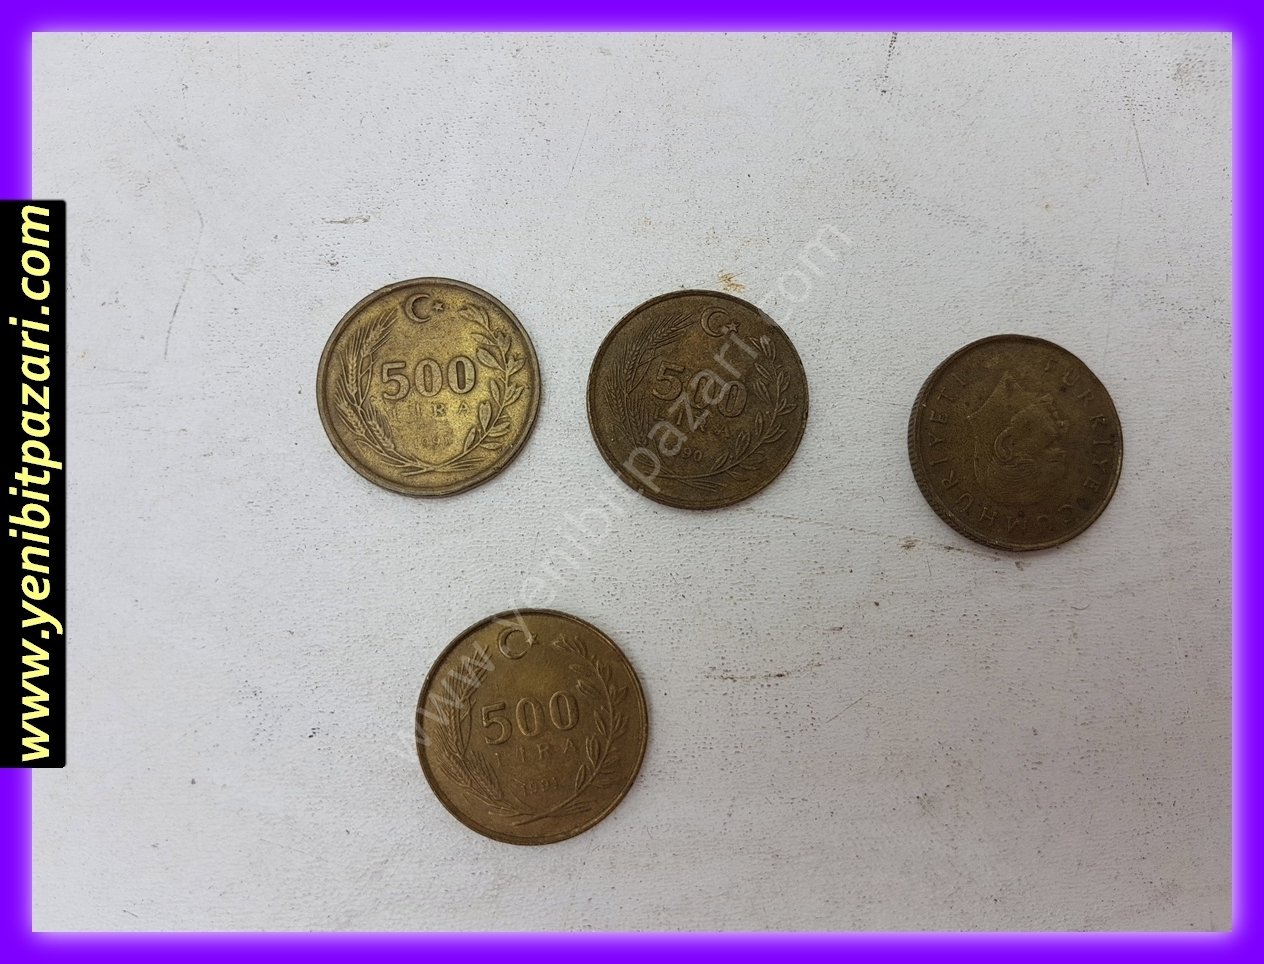 500 beş yüz türk lirası tl lira 1990 1991 orjinal antika tarihi eski para çeşitleri metal madeni paralar kolesksiyonluk nostalji bozuk para